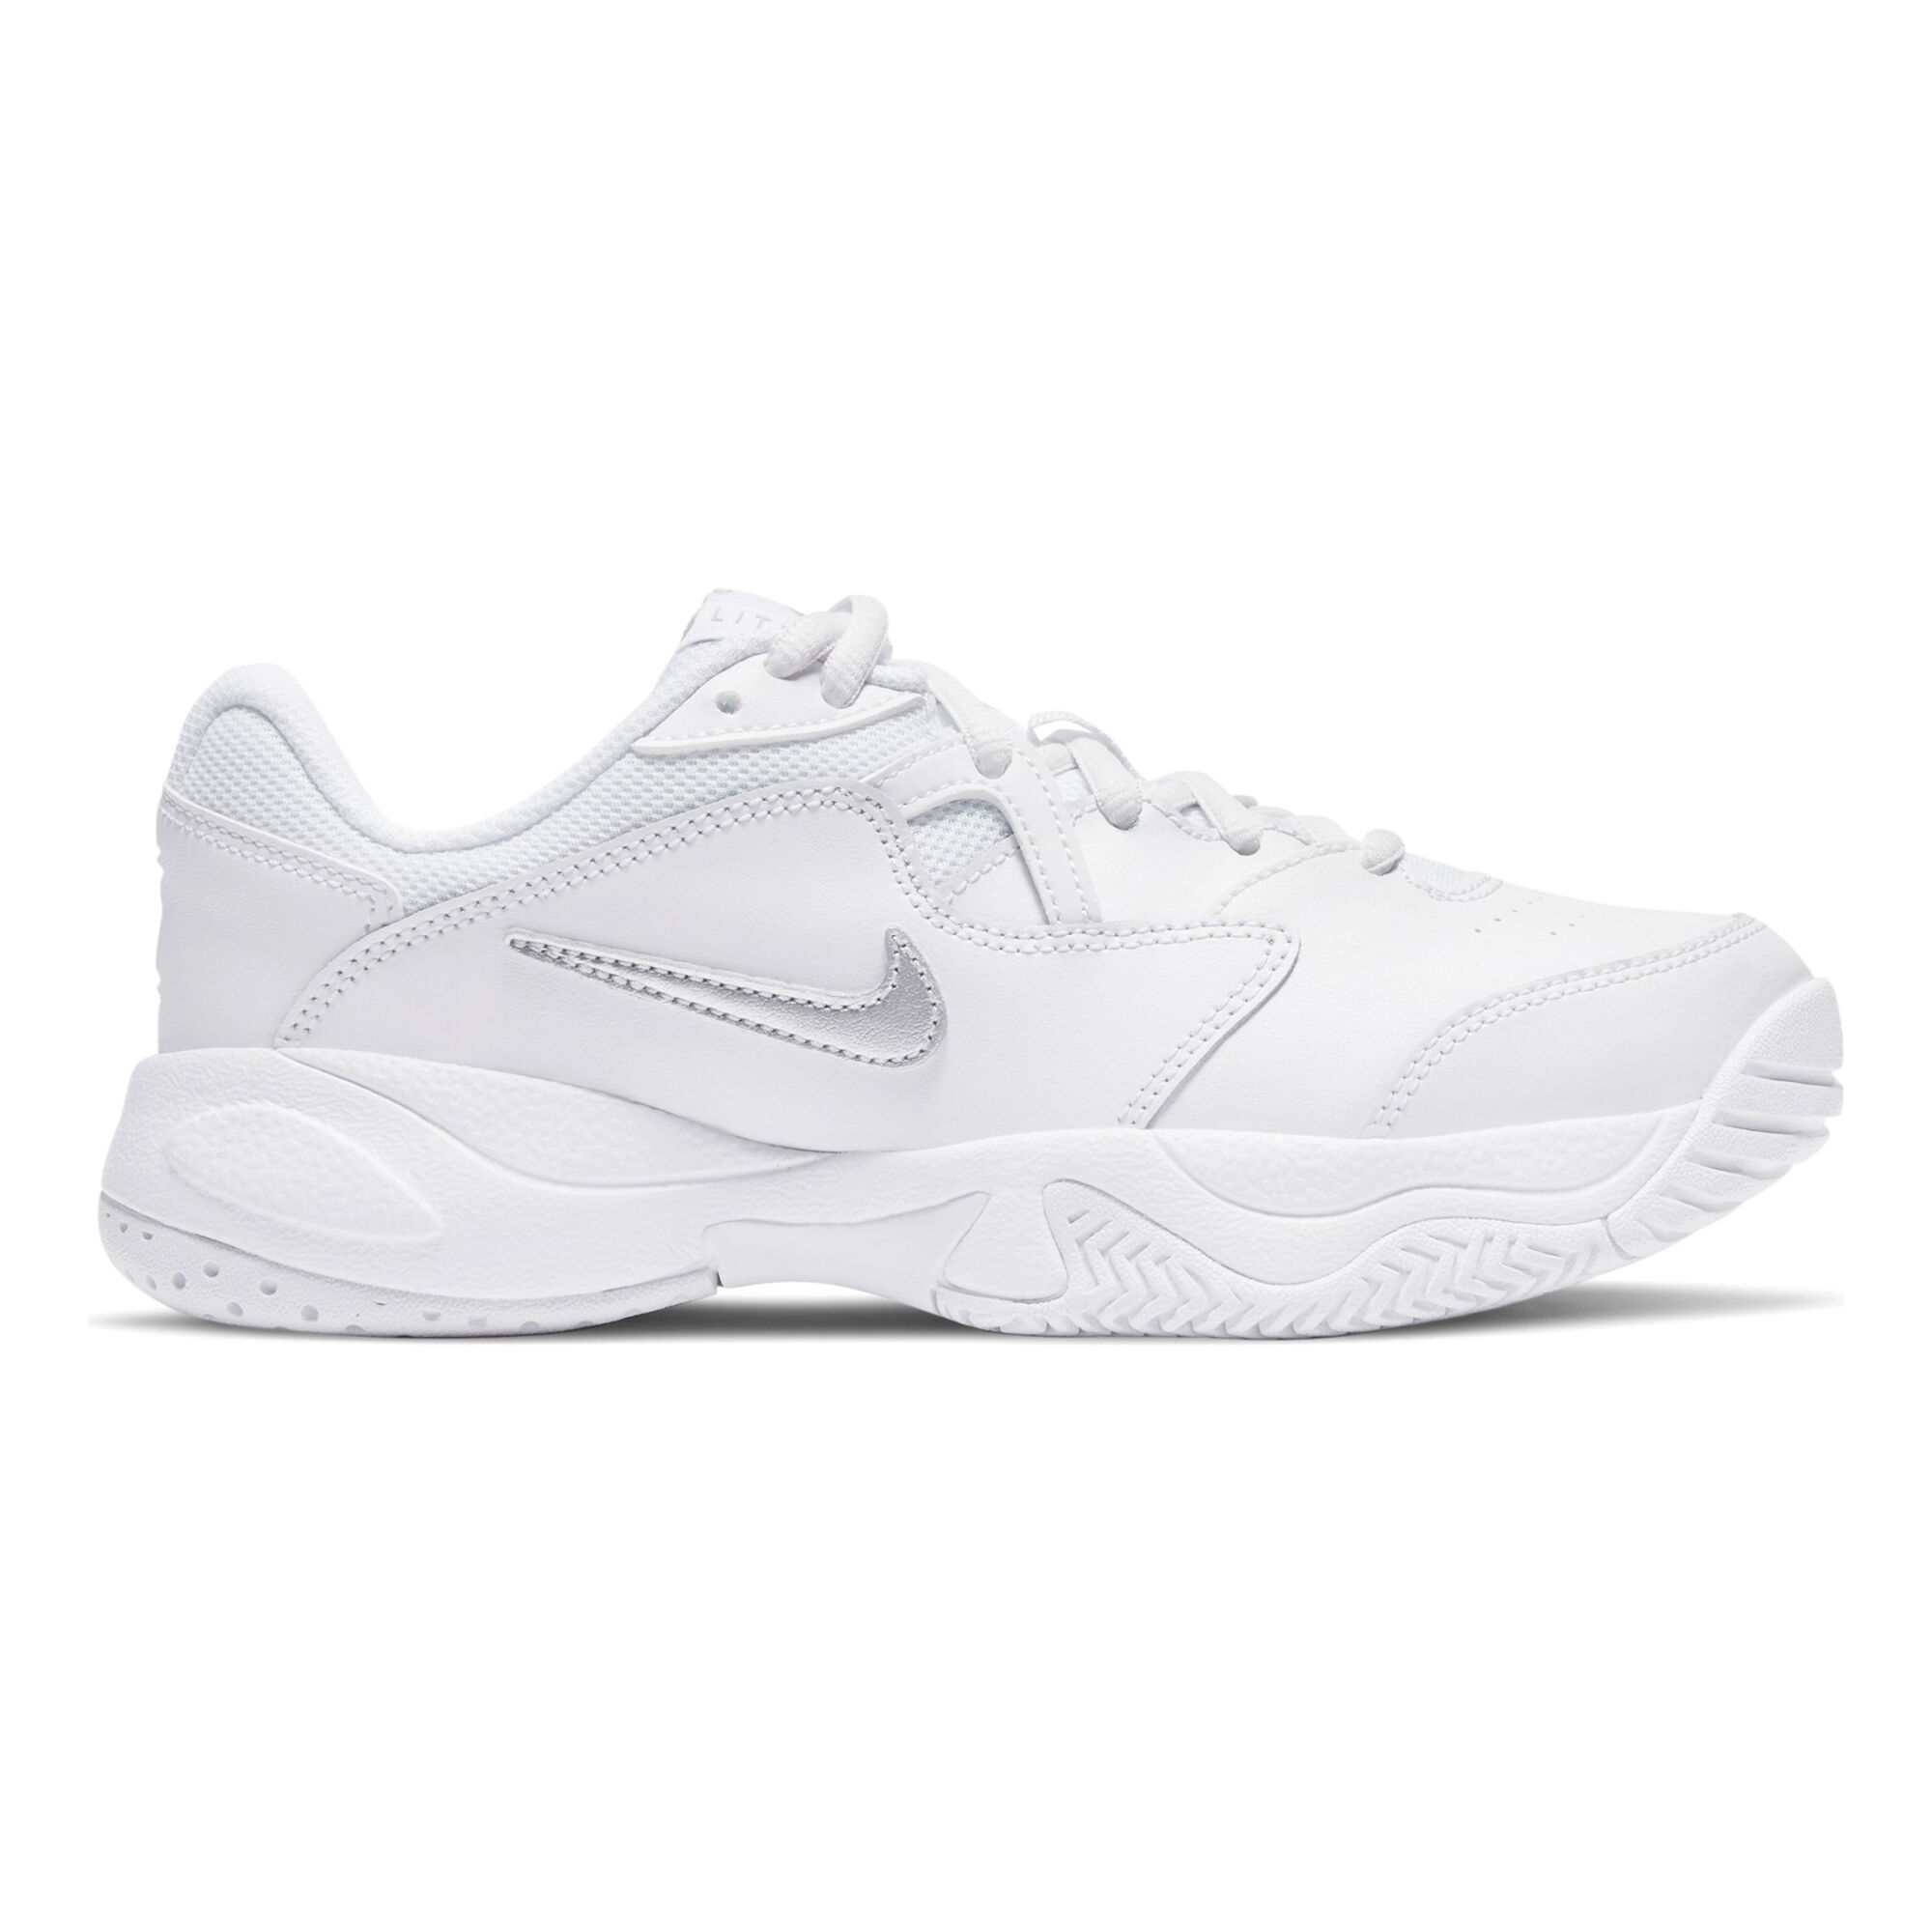 dauw veelbelovend Groenten buy Nike Court Lite 2 All Court Shoe Kids - White, Silver online | Tennis -Point